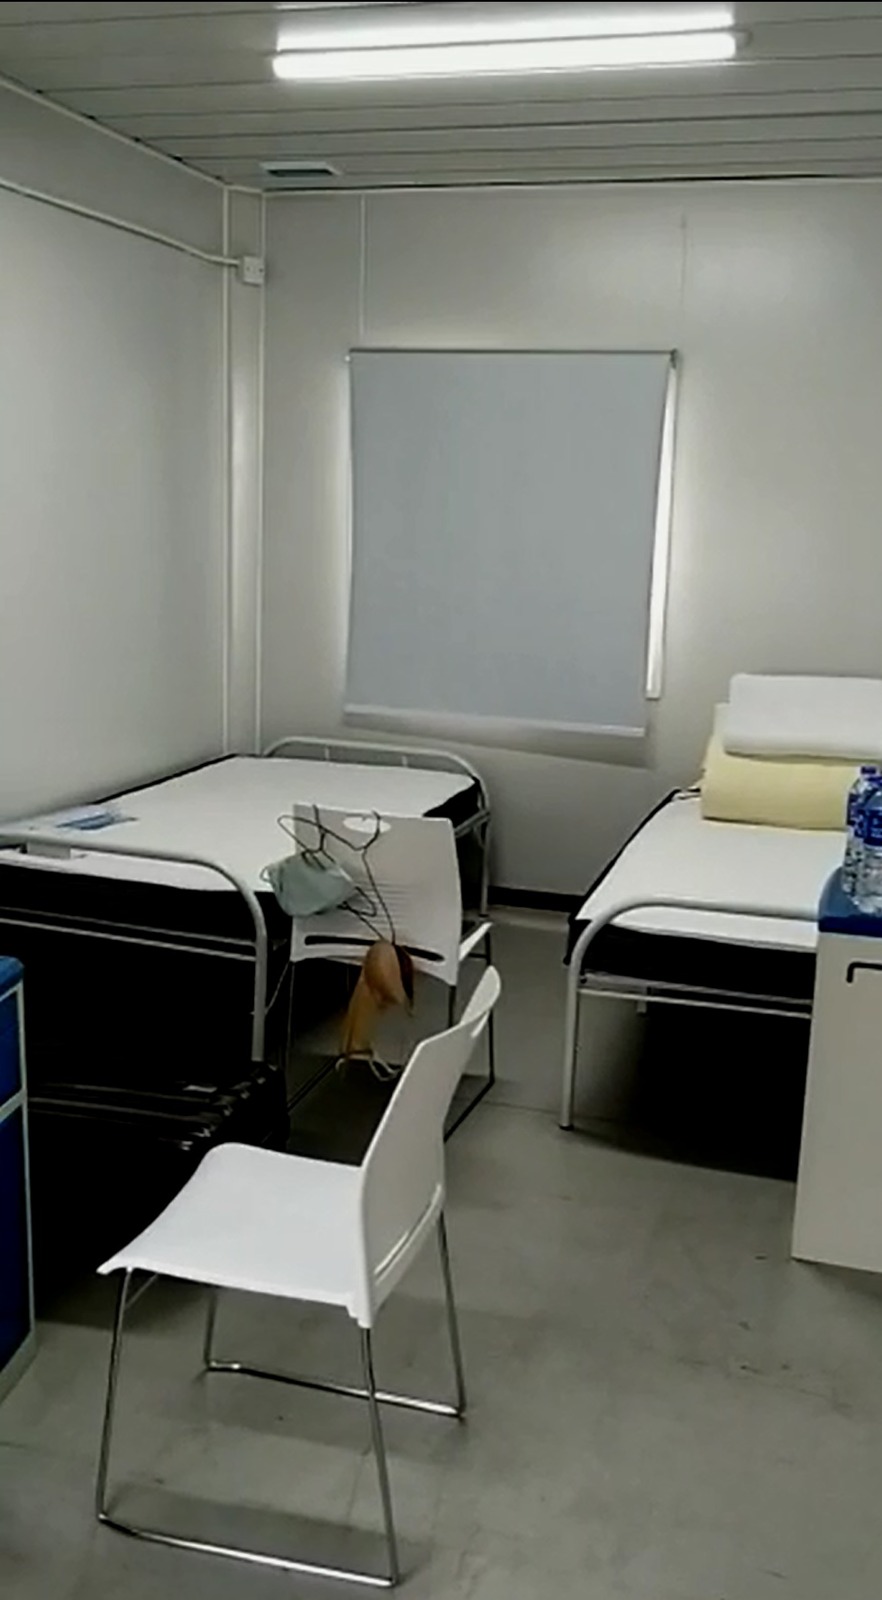  林太指青衣「方艙醫院」房間提供舒適的名牌牀褥。 受訪者提供